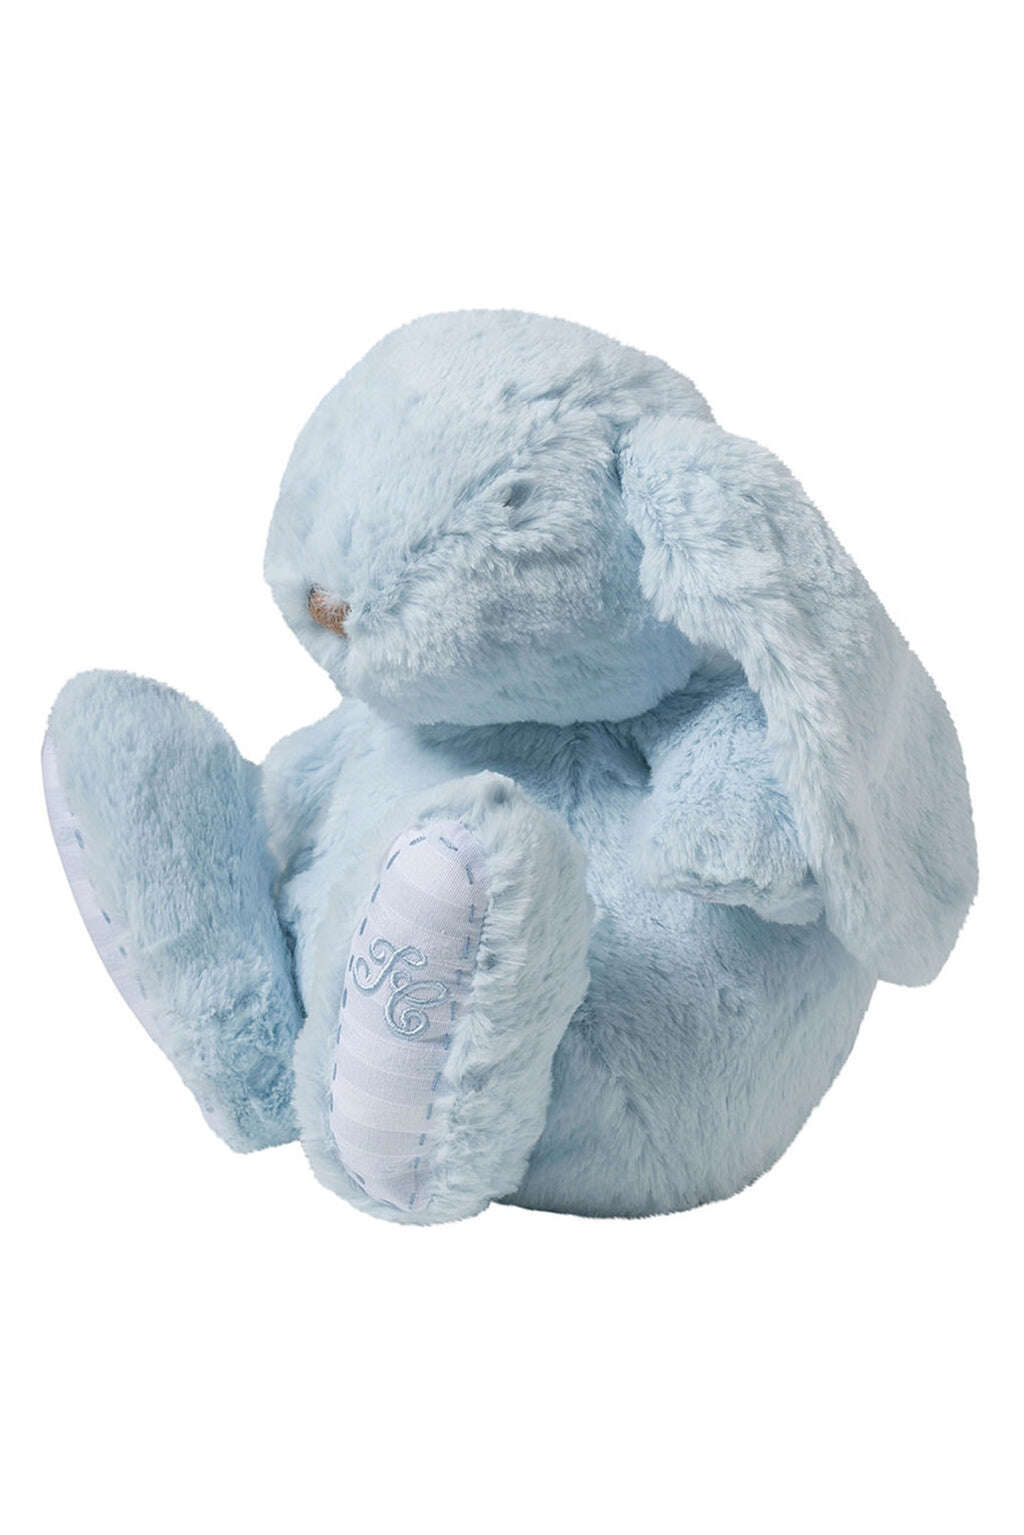 Augustin le lapin - 25 cm bleu ciel